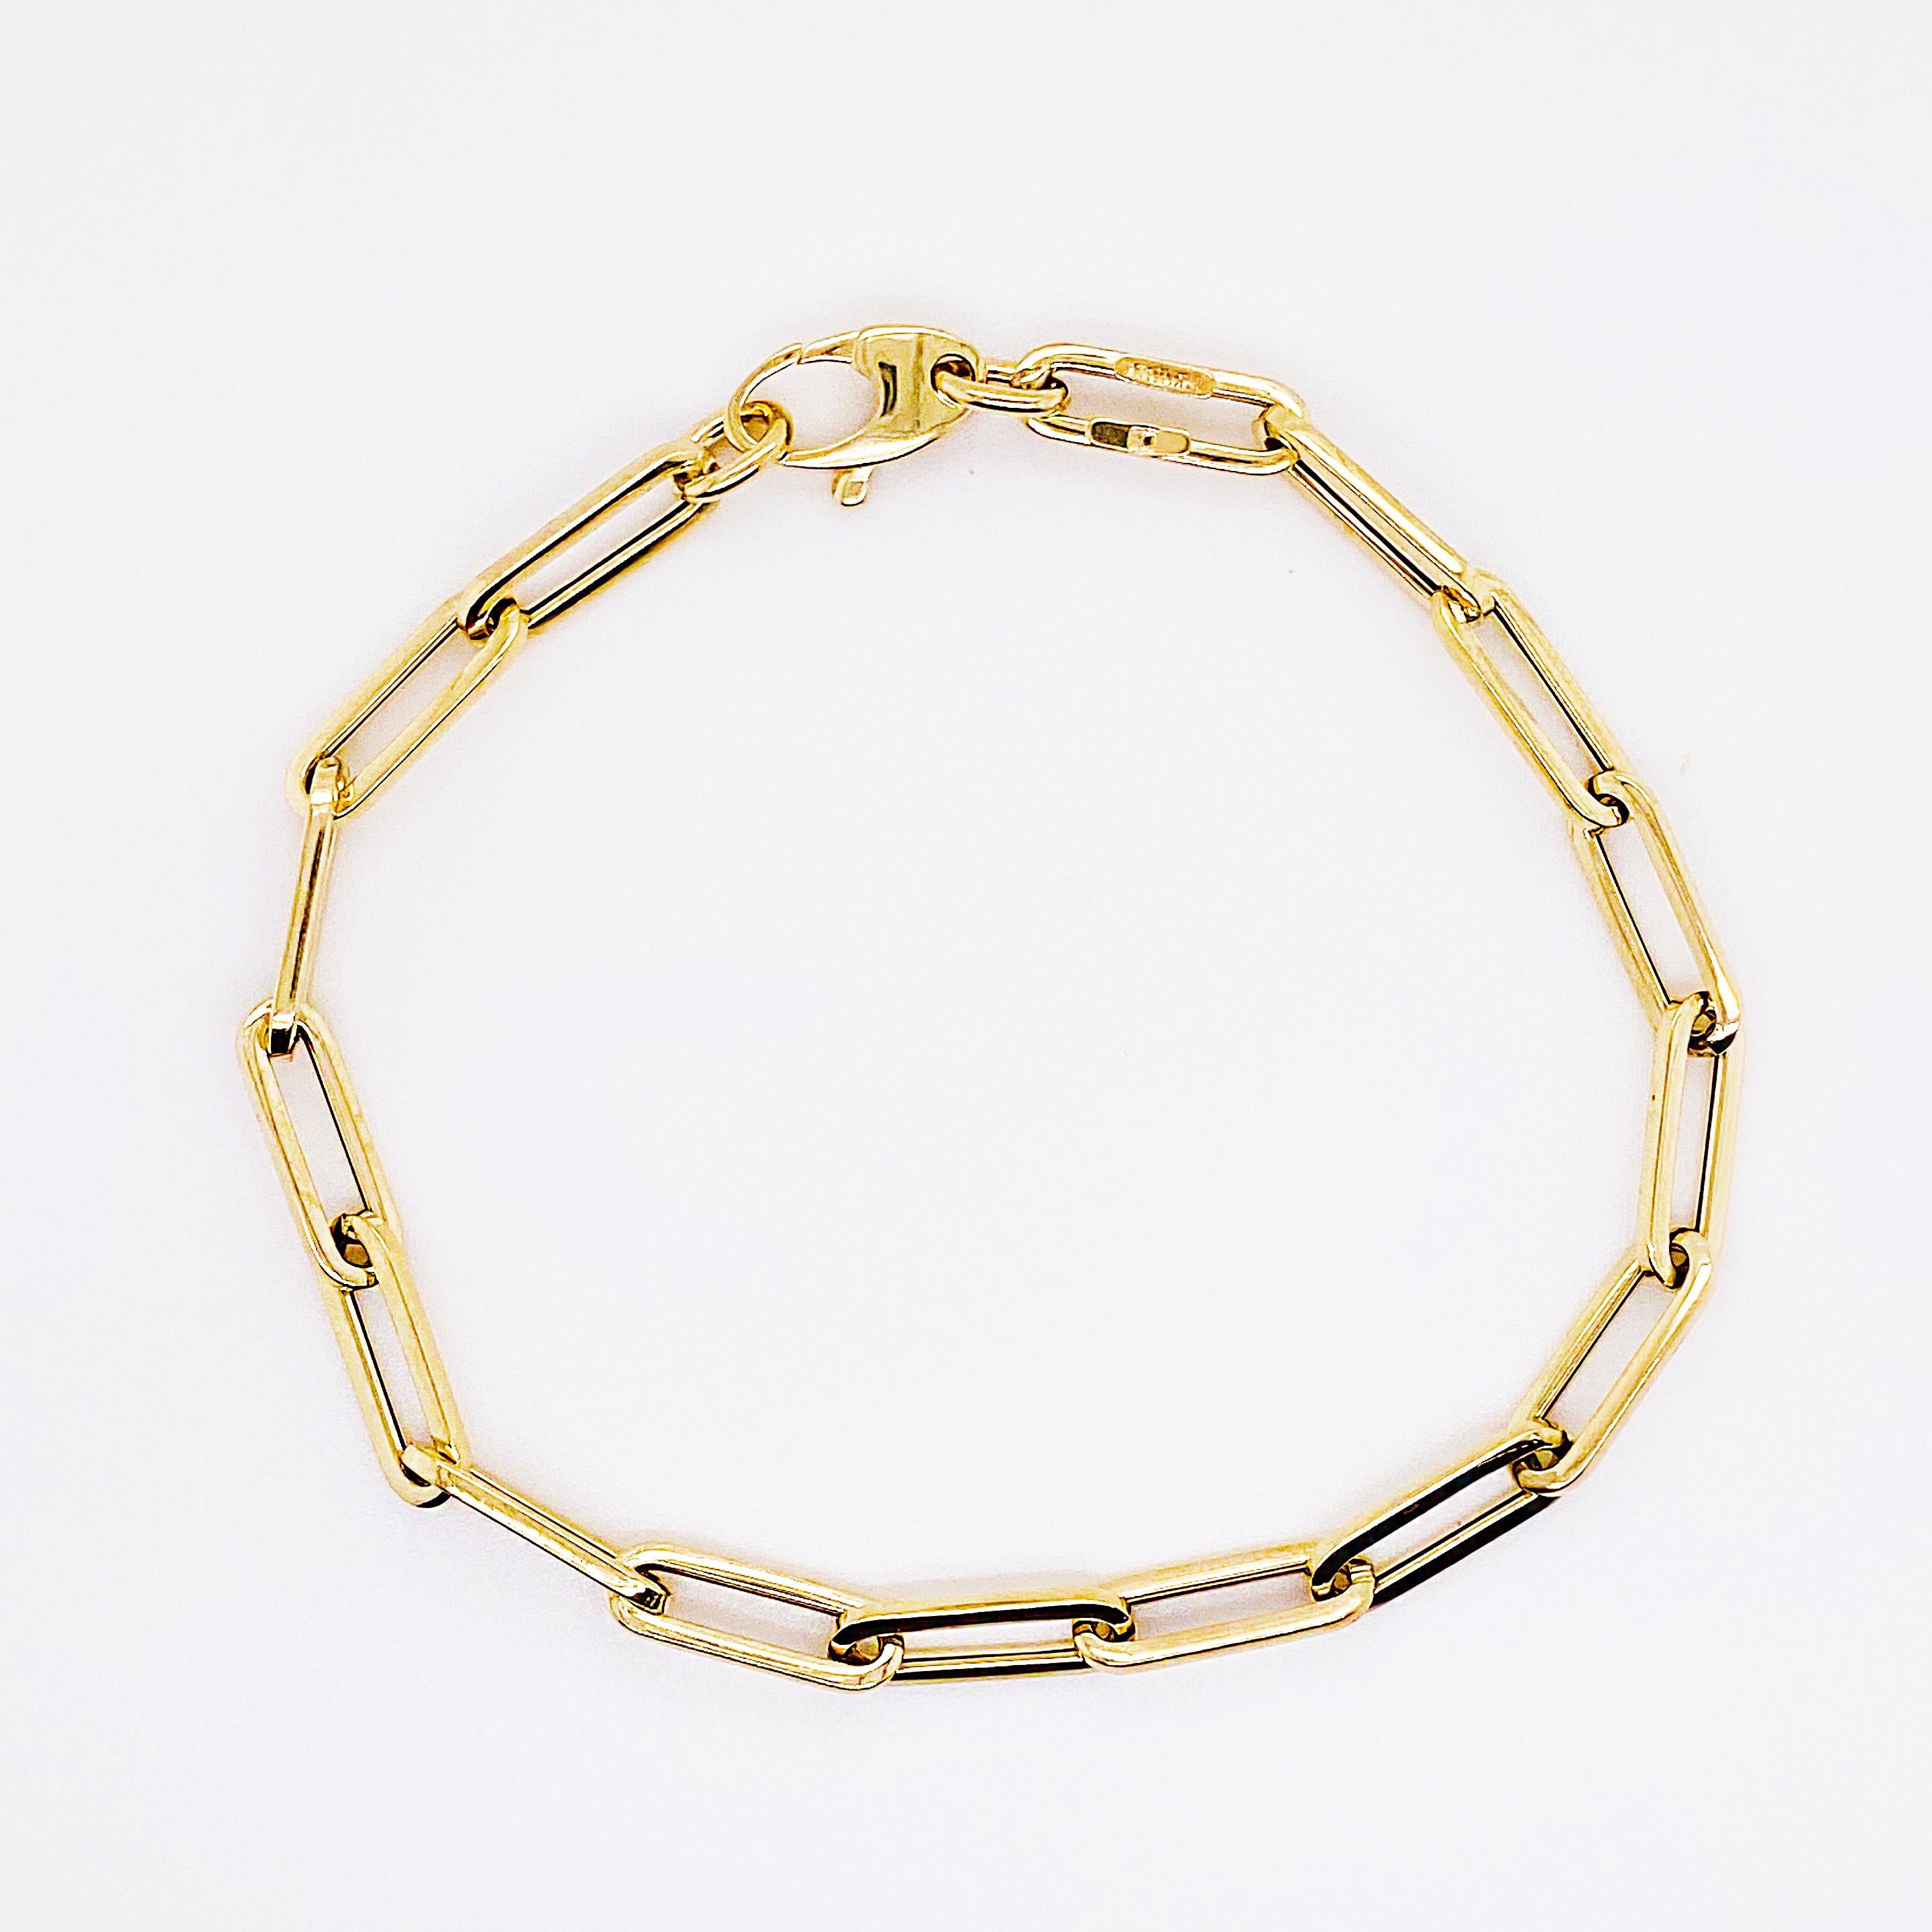 Gold Paper Clip Chain Bracelet Large Link Bracelet 14 Karat Gold 